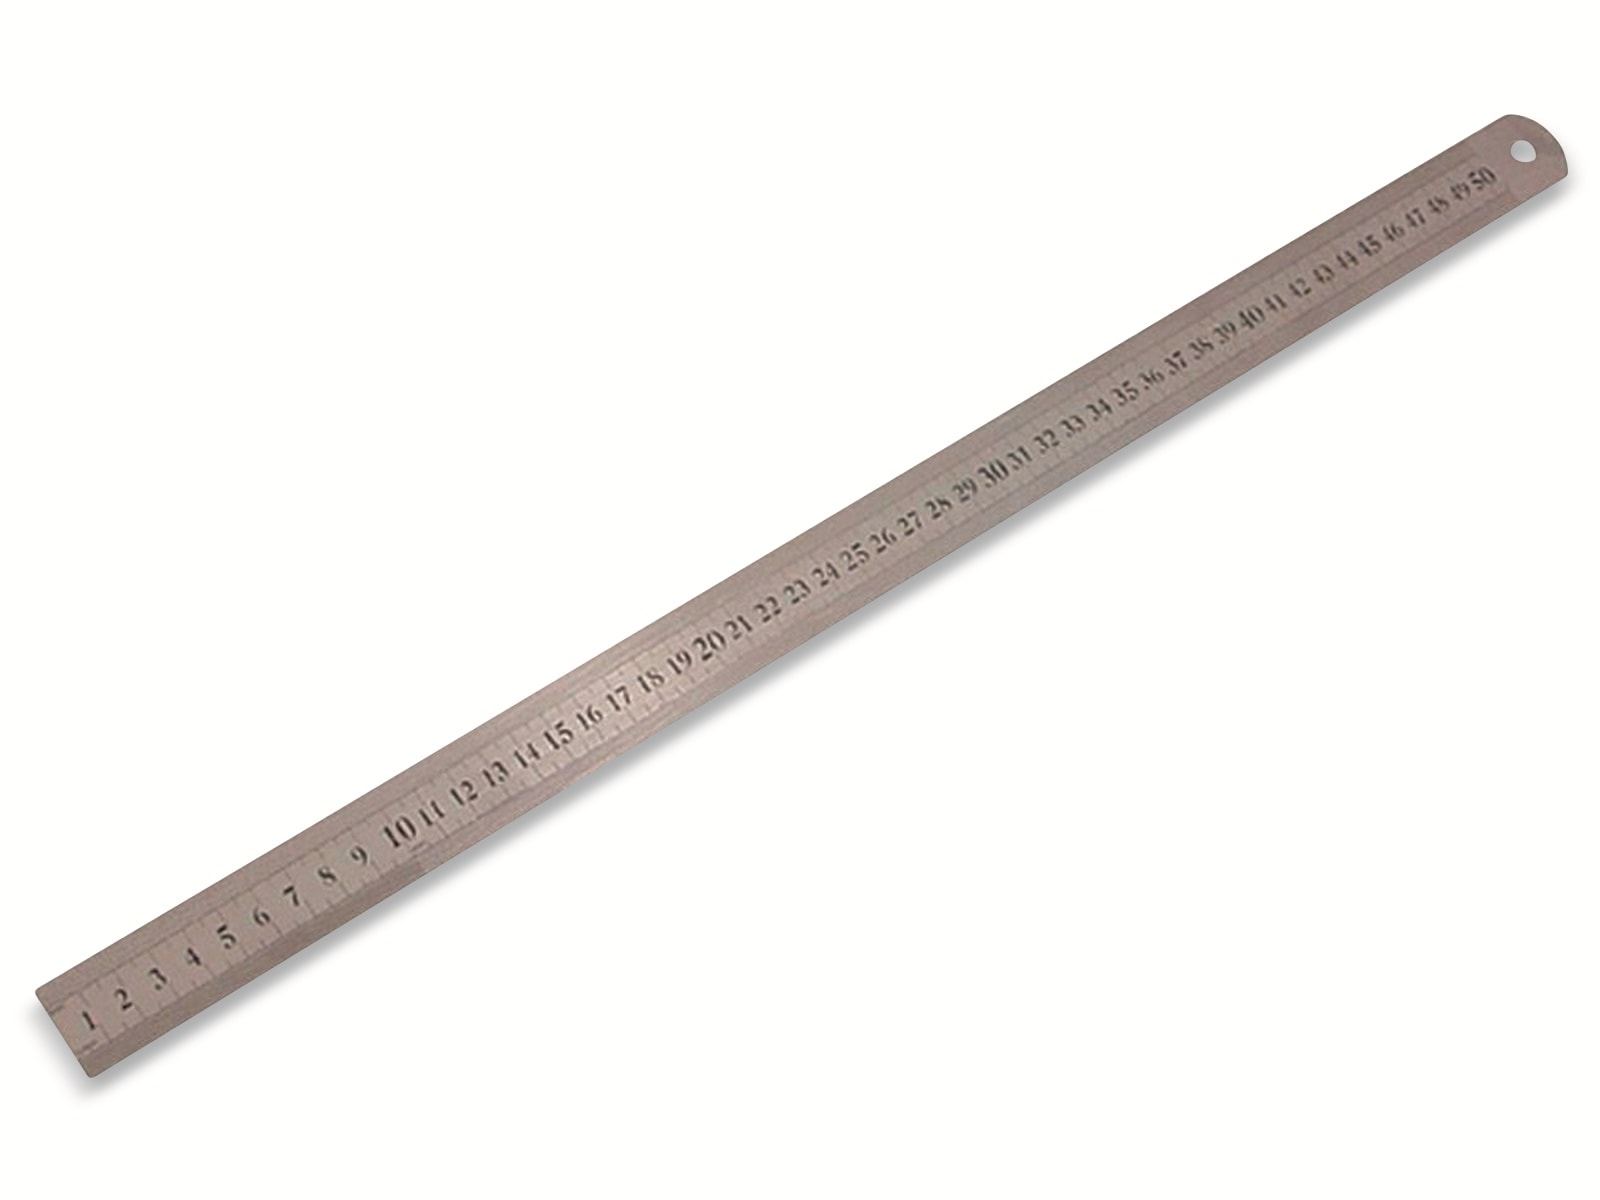 TOOLTECH Metall Lineal 500 mm, flexibel